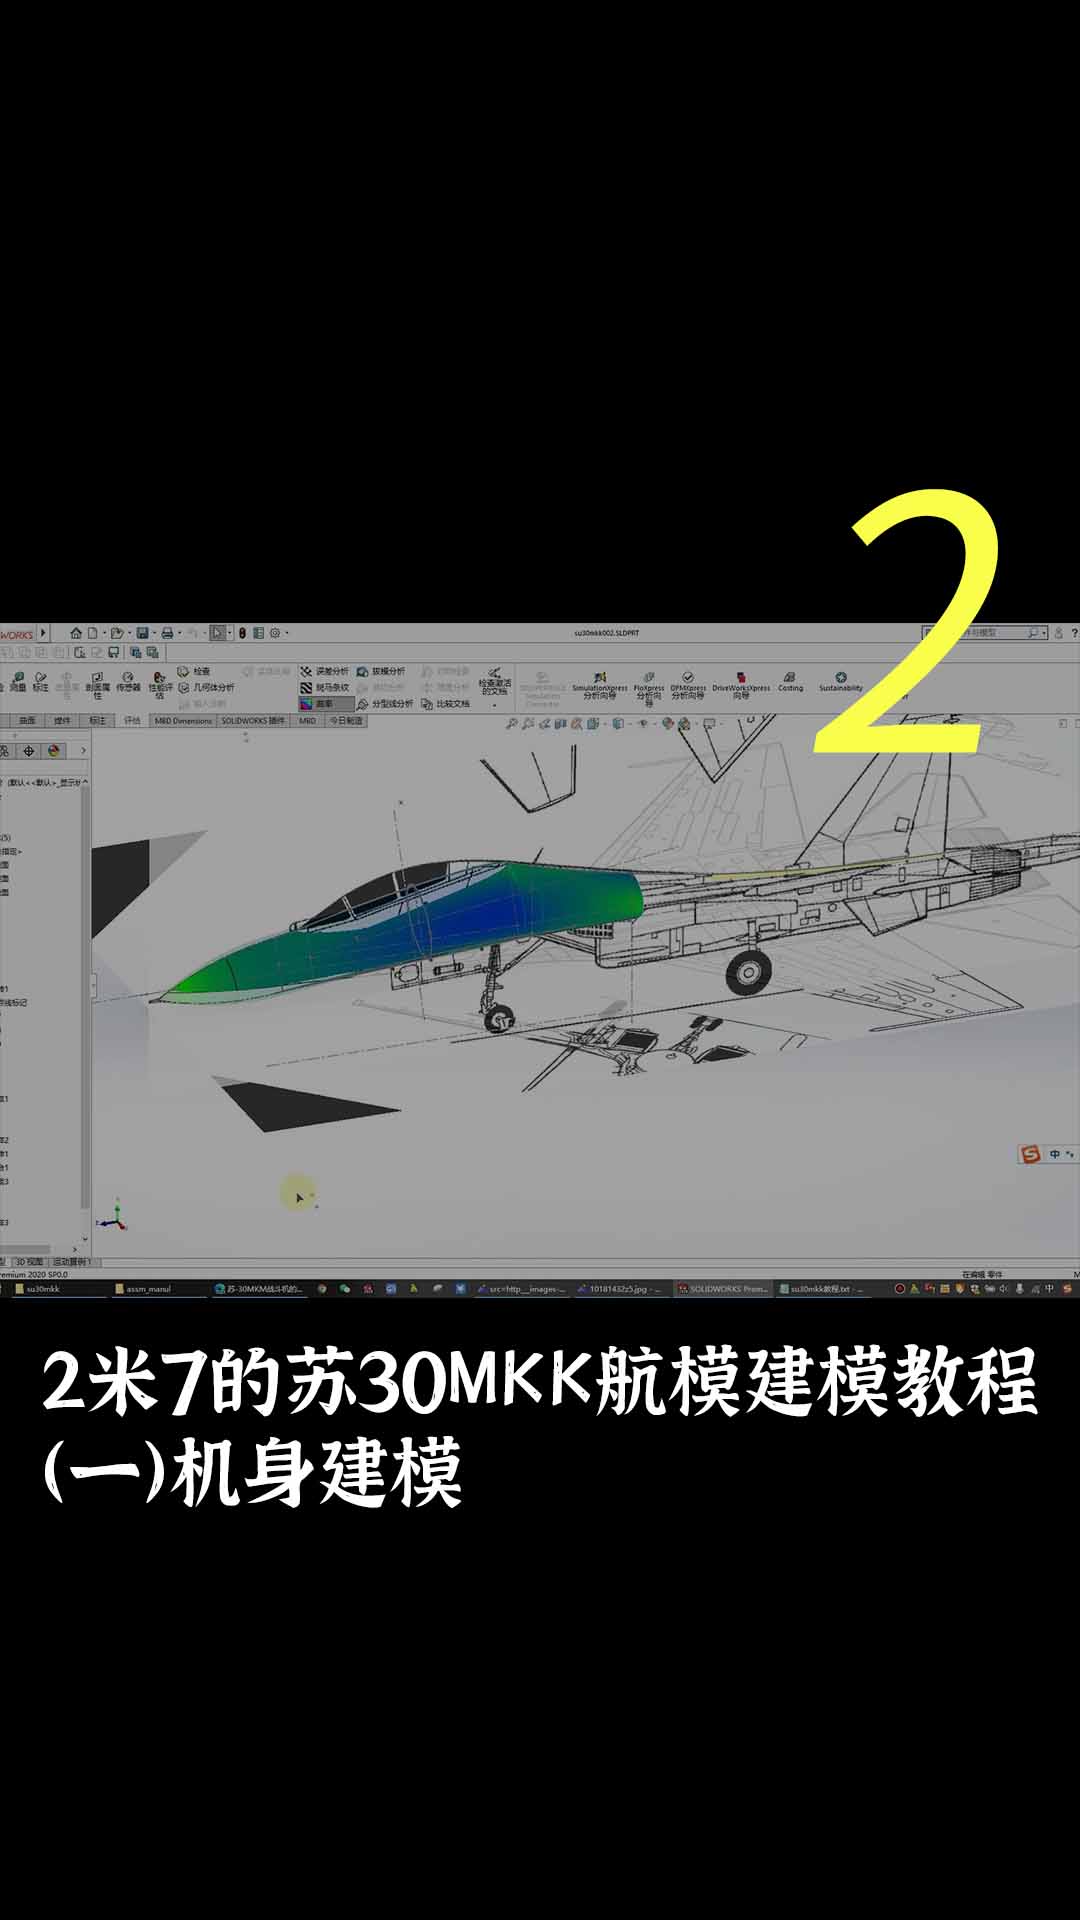 2米7的苏30MKK航模建模教程（一）机身建模2